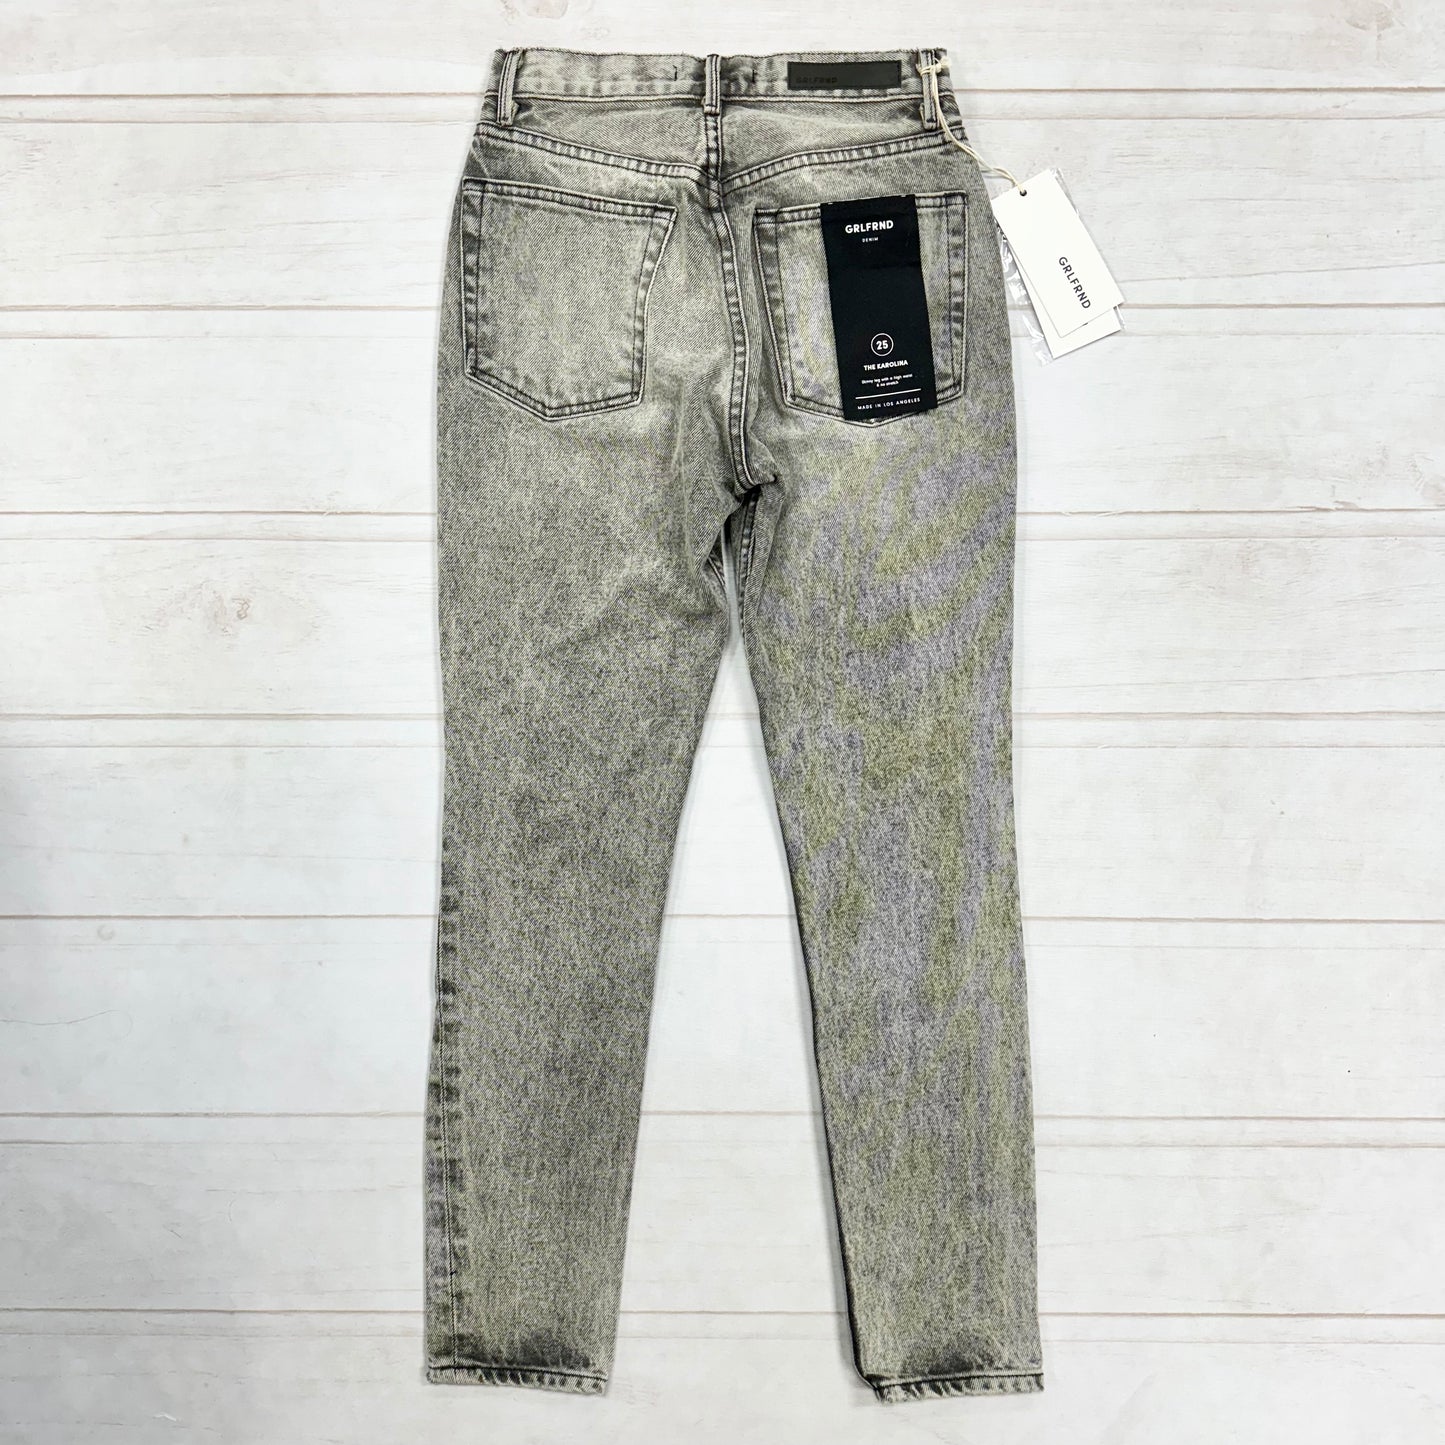 Jeans Designer By Grlfrnd Size: 0